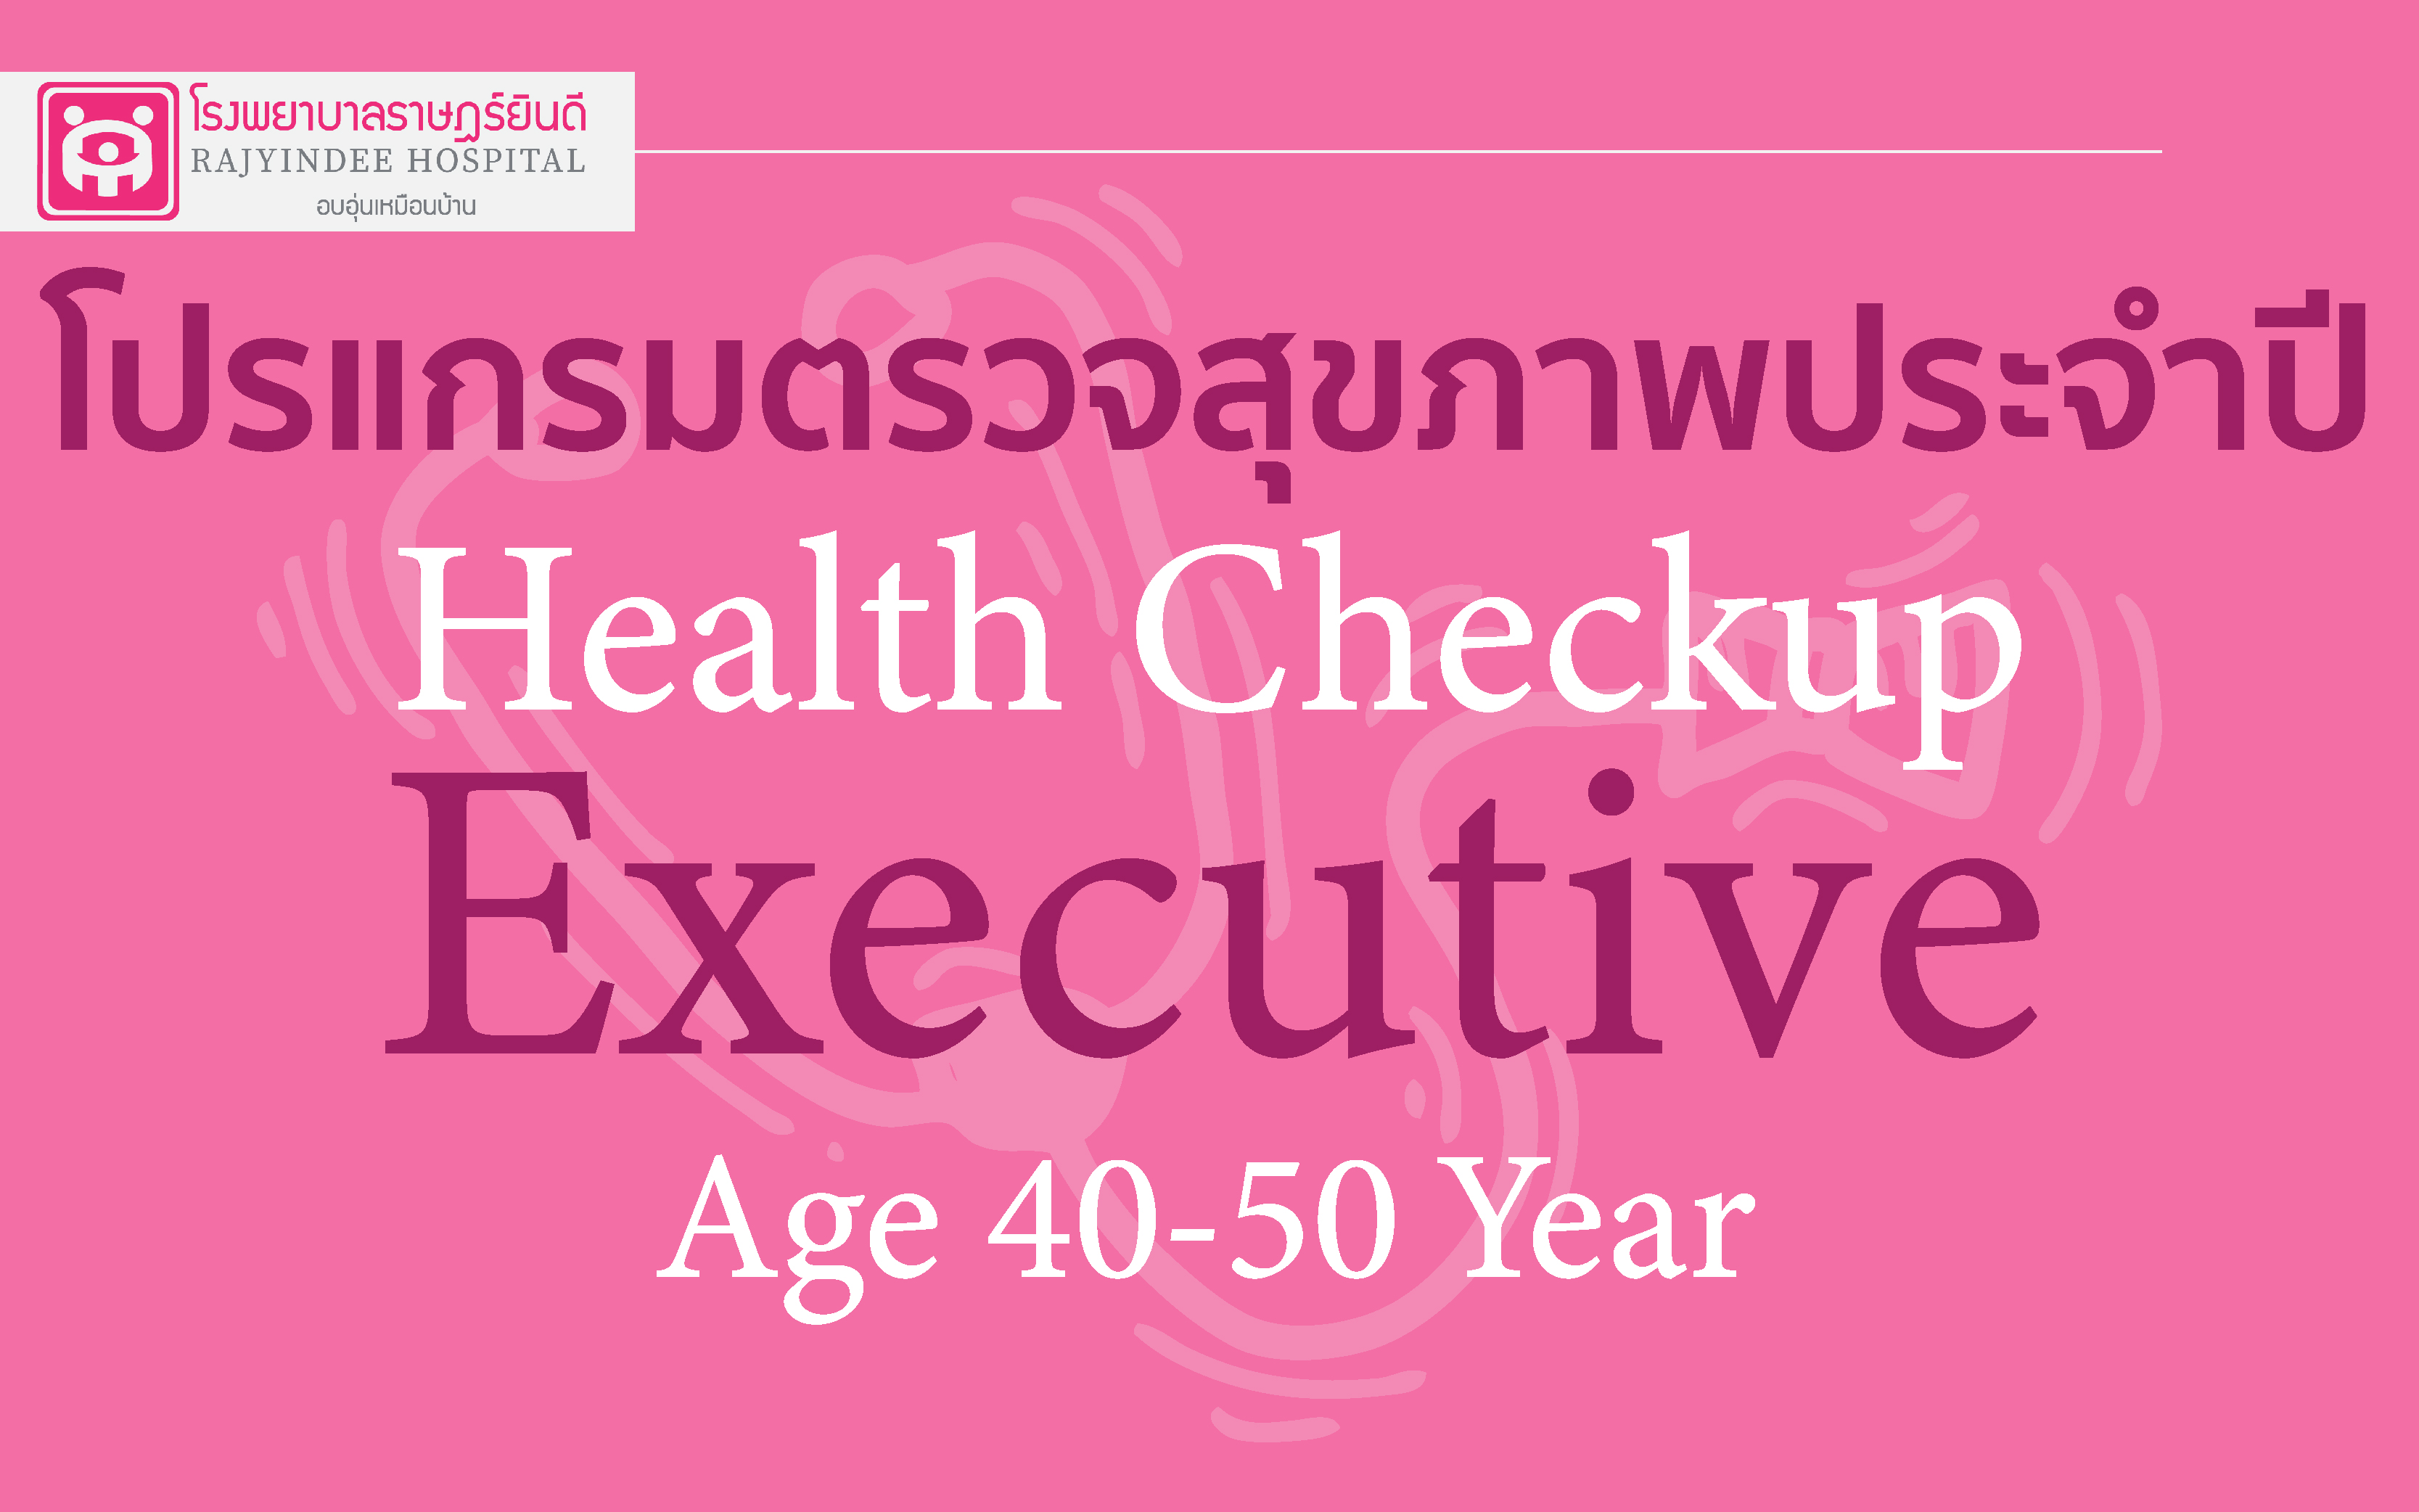 โปรแกรมตรวจสุขภาพ Exclusive (อายุ 40-50 ปี)